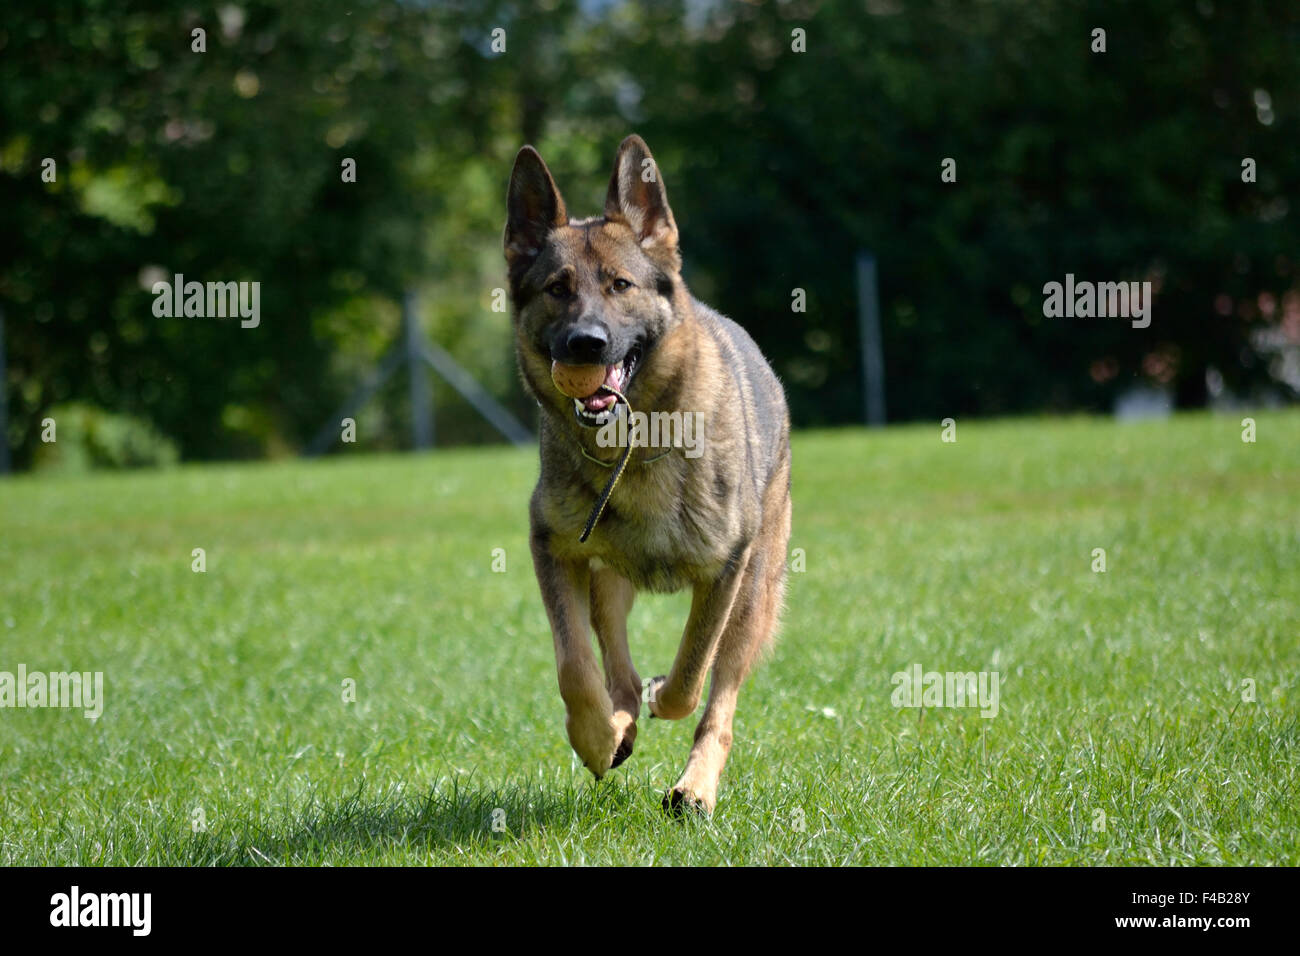 German shepherd running with game ball Stock Photo